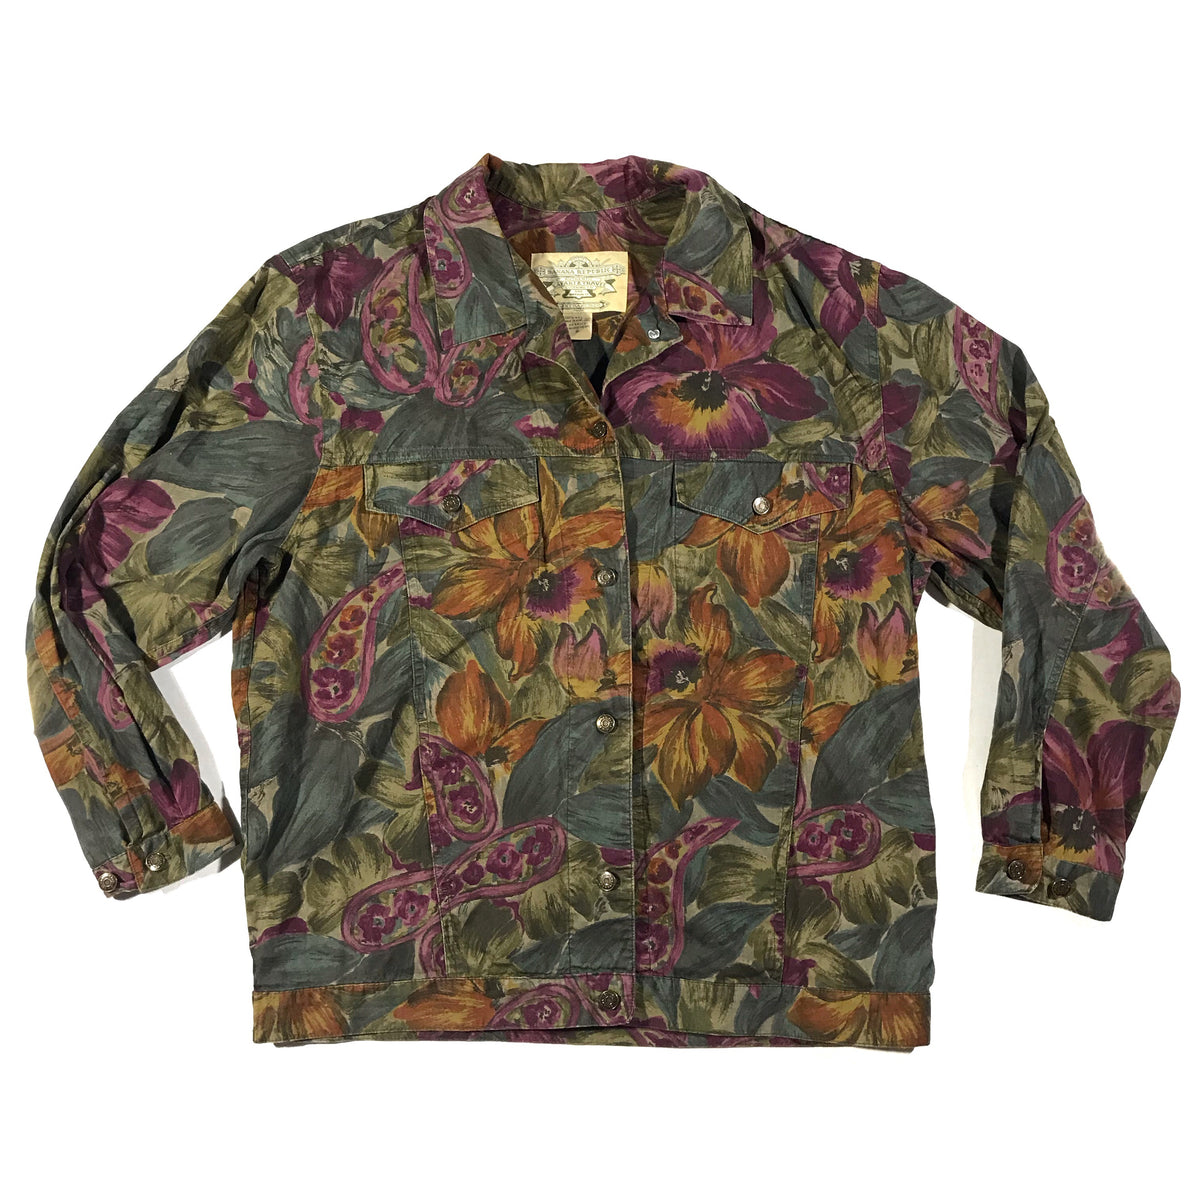 90s Banana republic safari & travel light weight floral jacket. Built